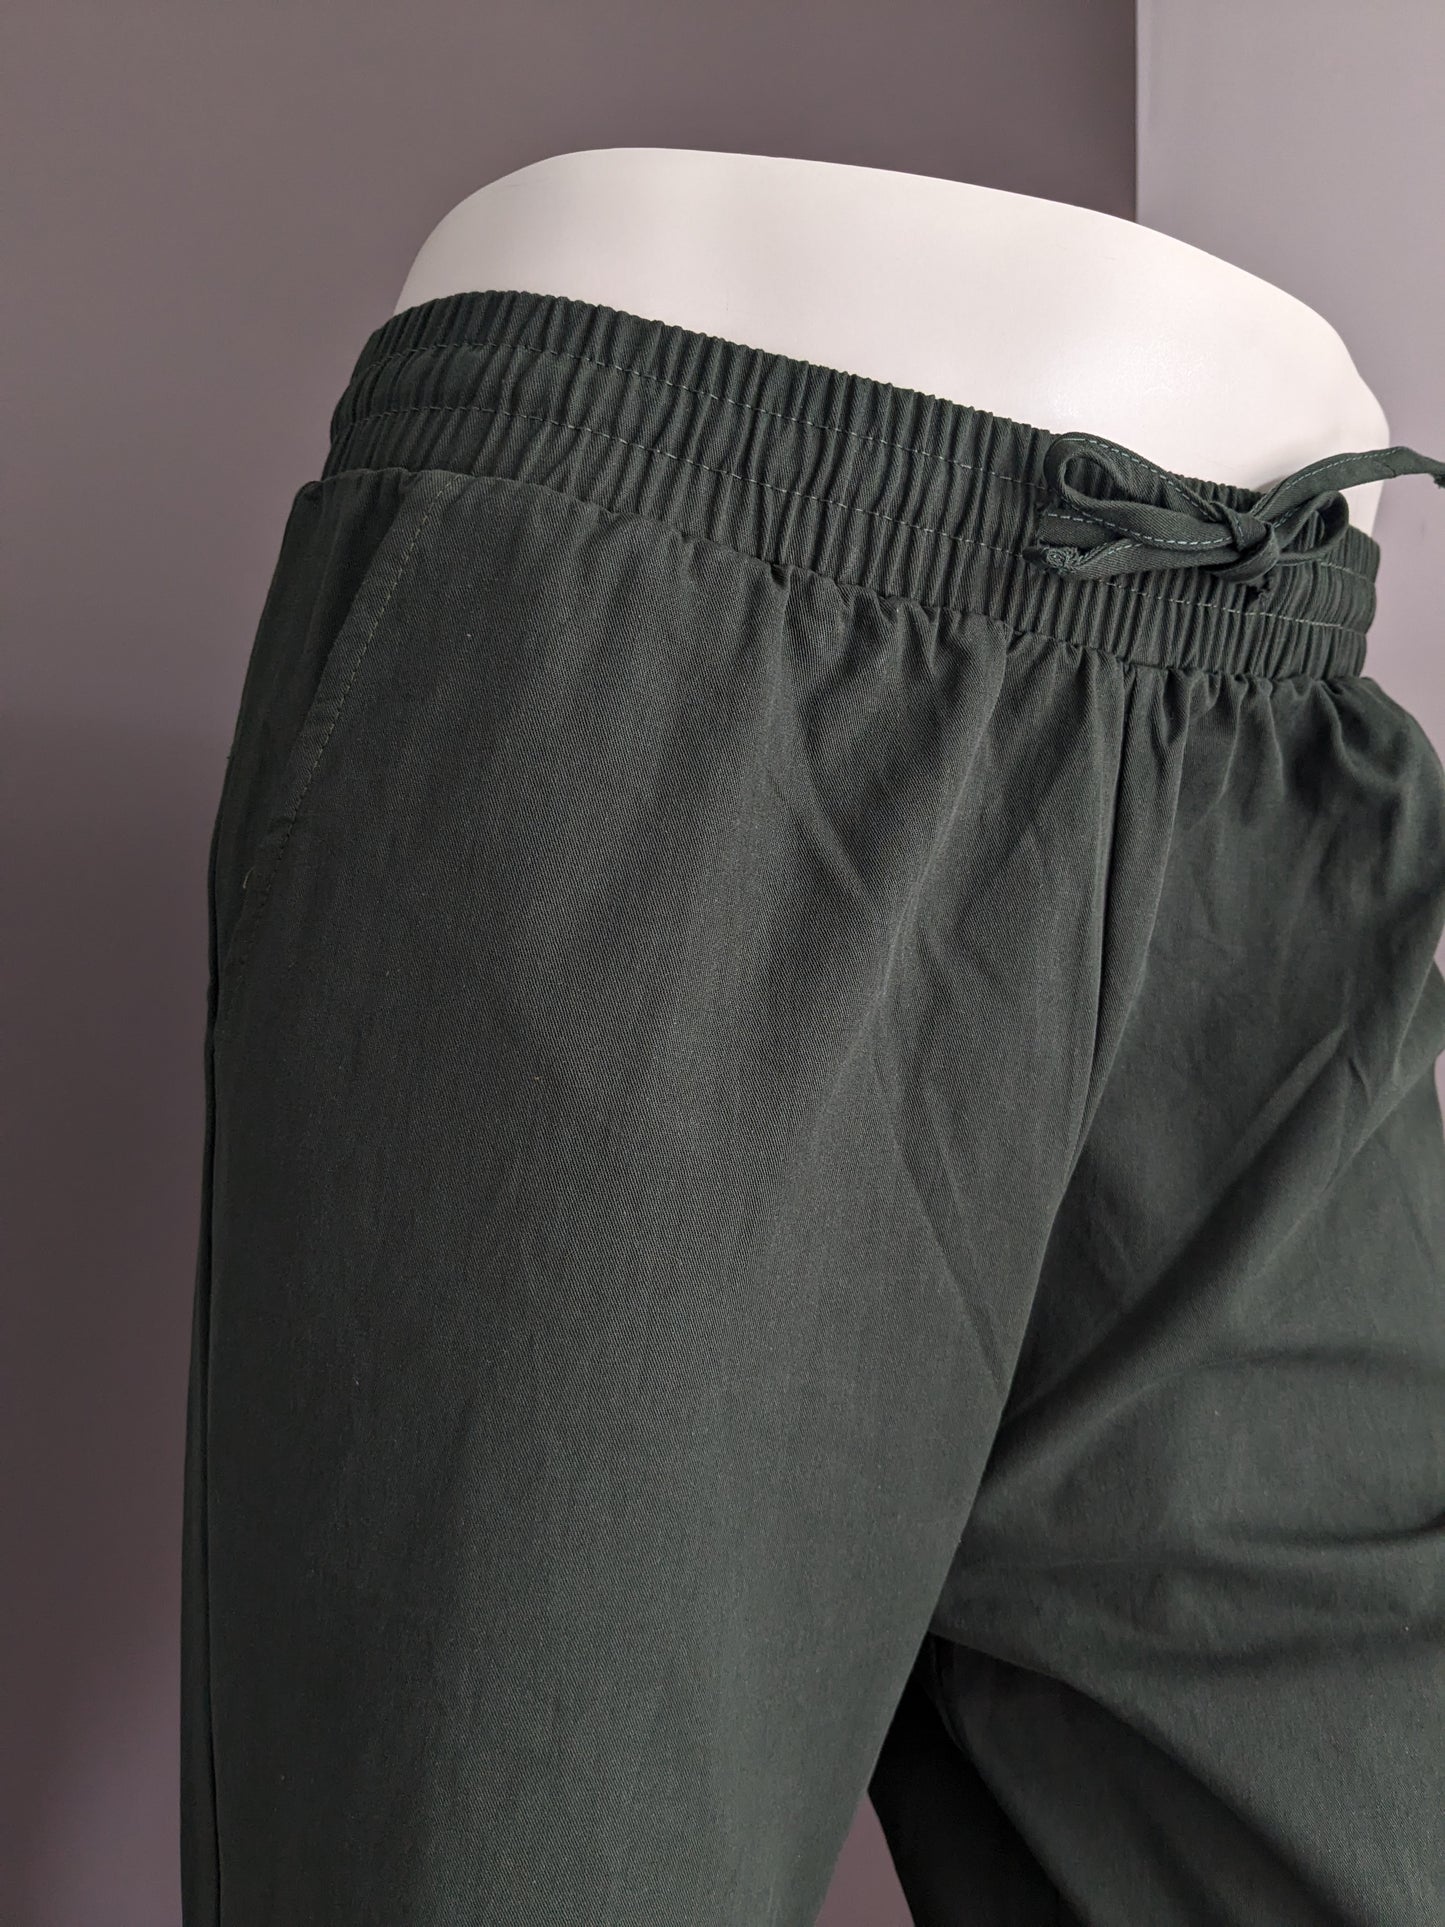 Pantaloni casuali senza marca con banda elastica. Verde colorato. Misurare